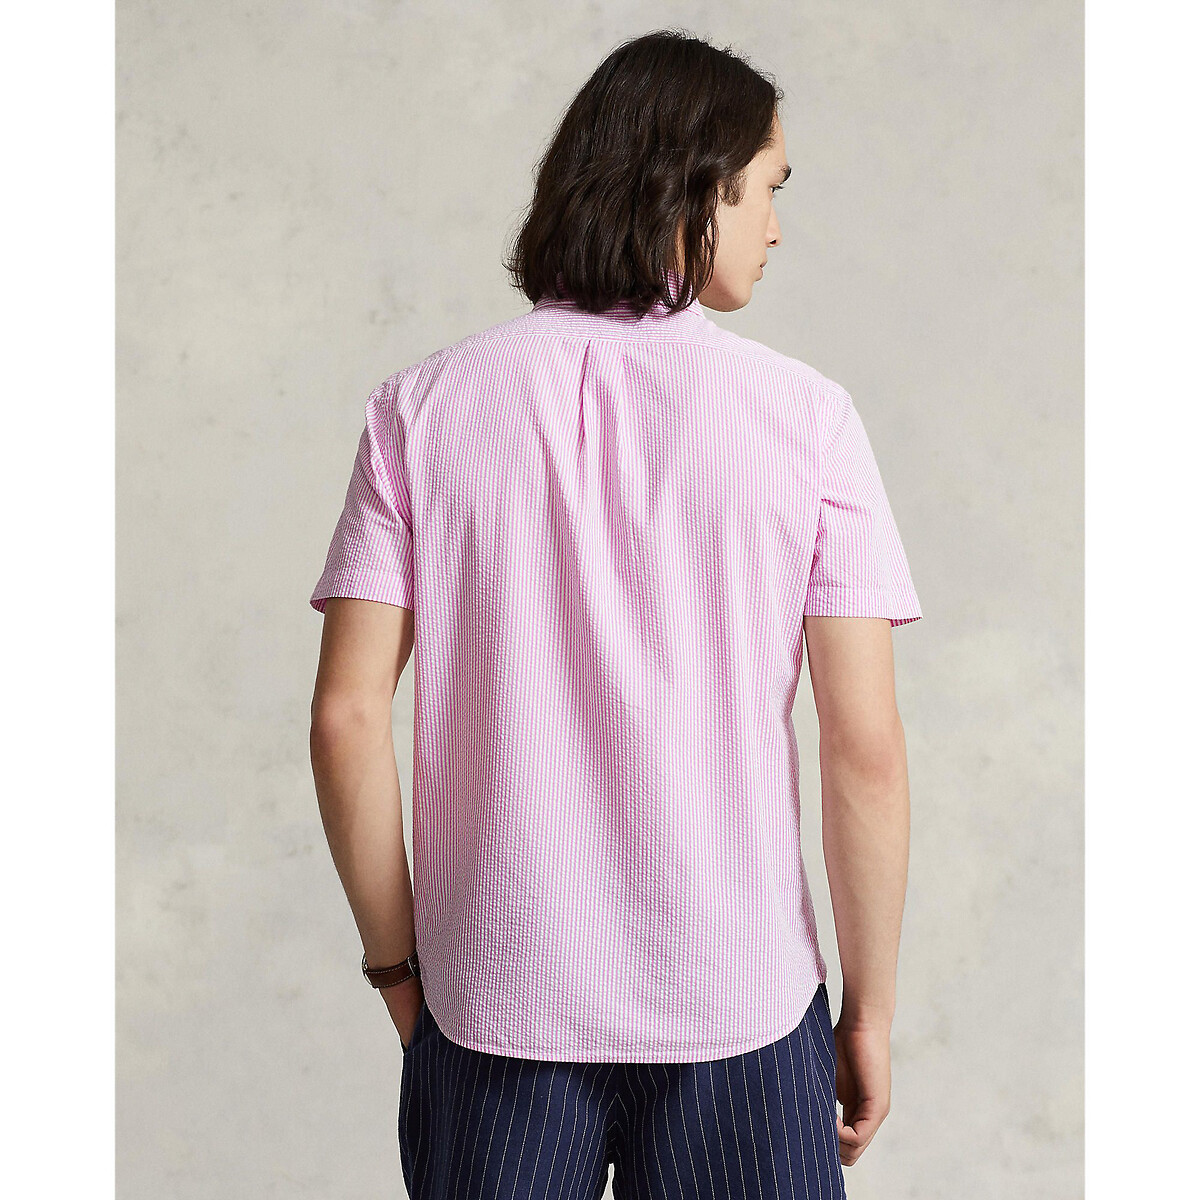 Рубашка Из легкой полосатой ткани с вышитым логотипом M розовый LaRedoute, размер M - фото 3